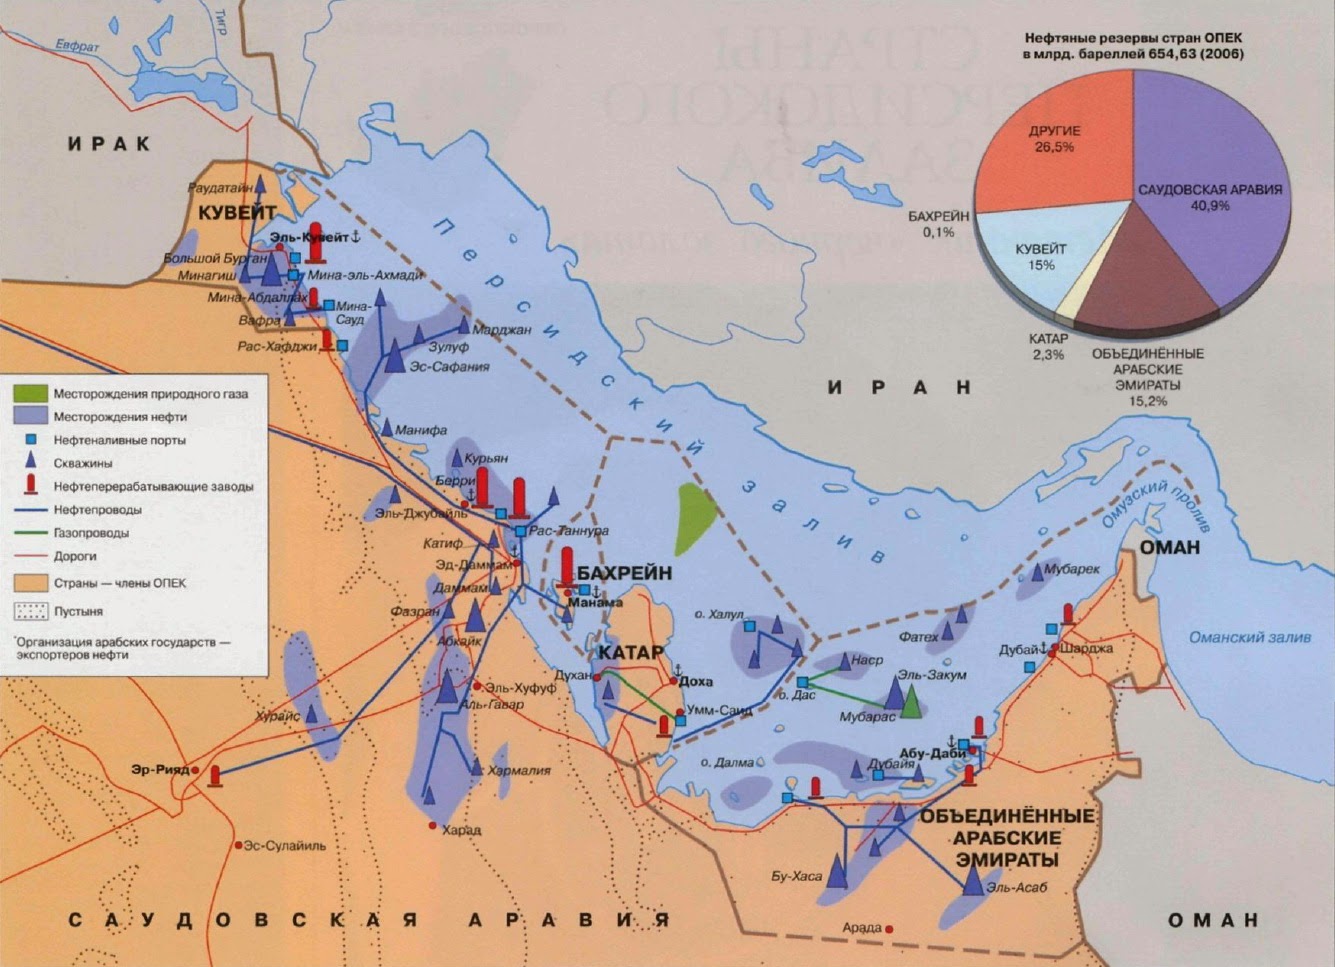 Персидский залив какие страны. Месторождения нефти в персидском заливе карта. Нефтяные месторождения Саудовской Аравии на карте. Нефтегазоносный бассейн Персидского залива. Карта нефтяных месторождений Персидского залива.